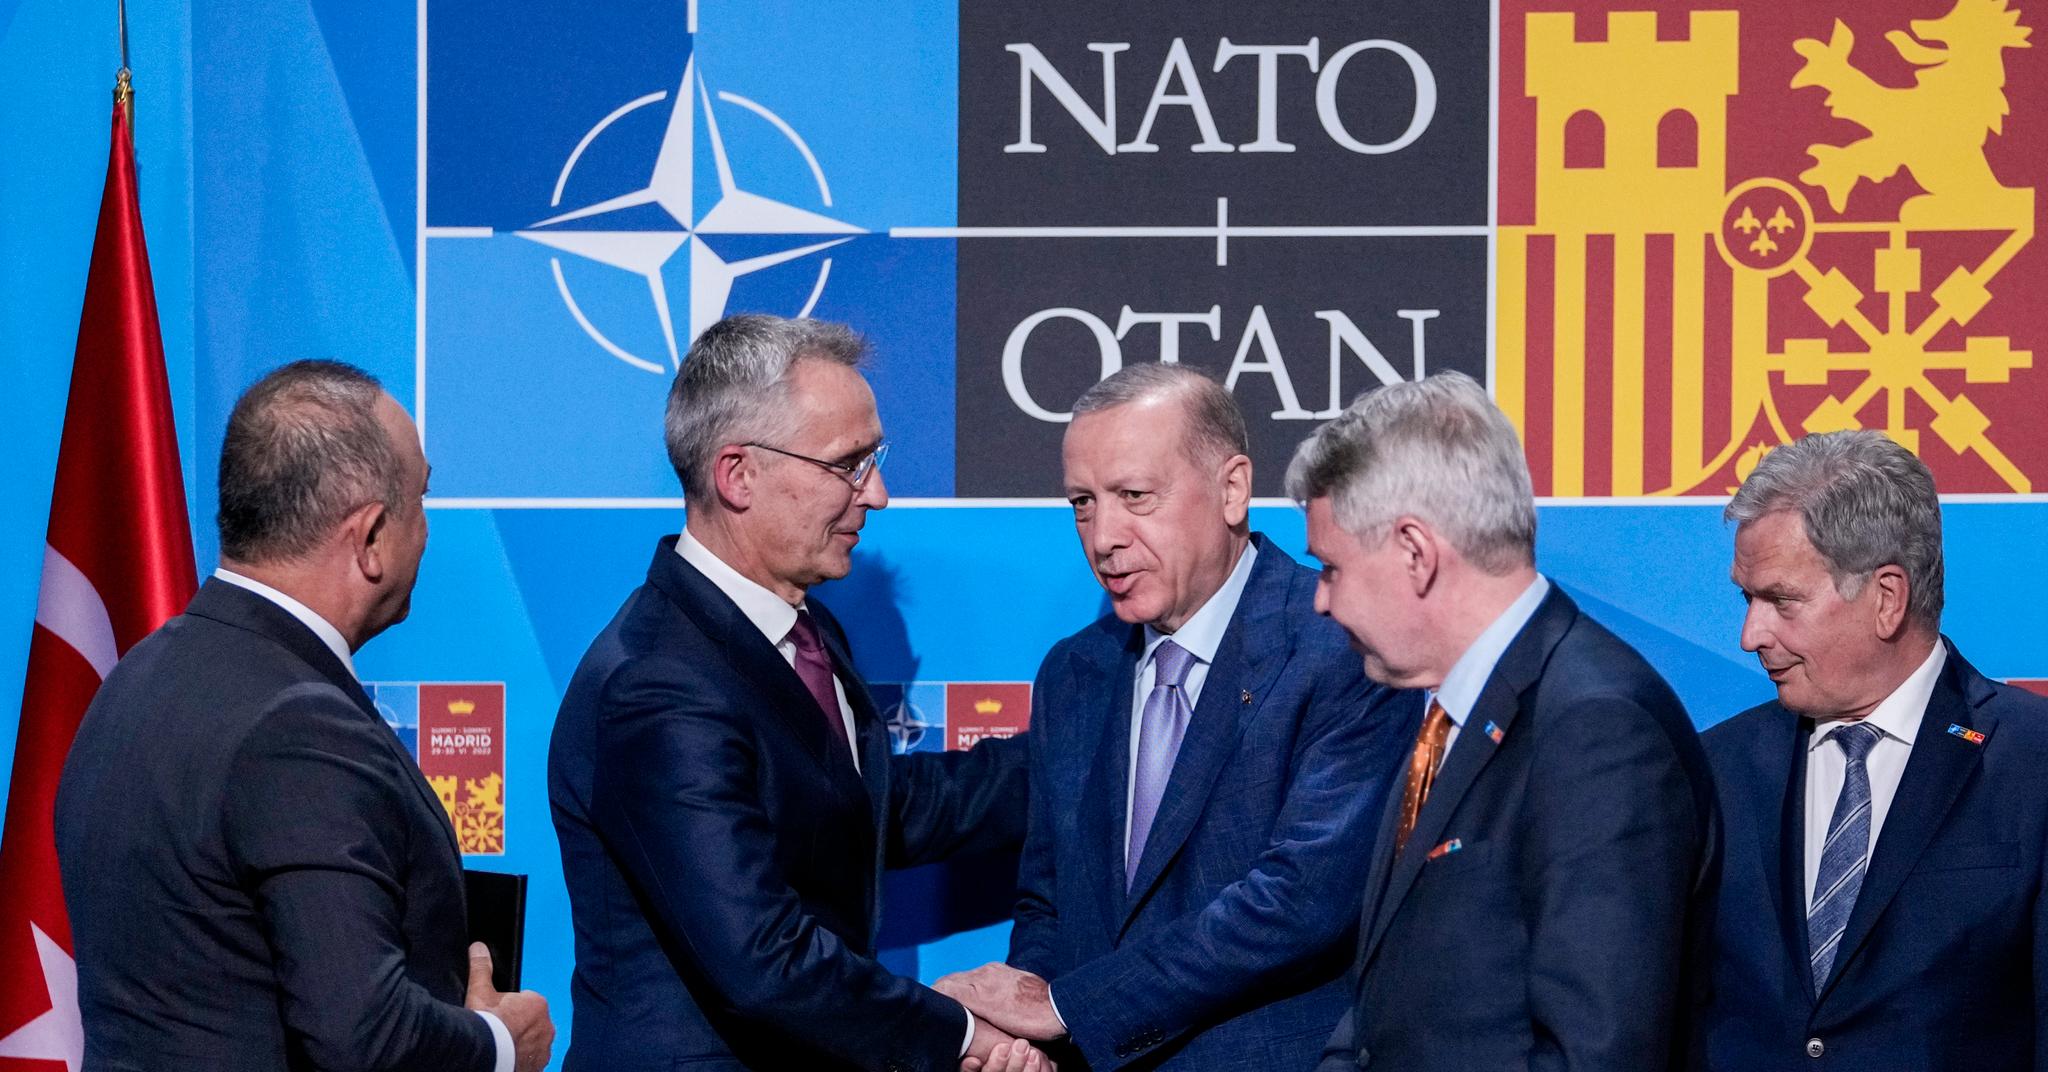 Et historisk øyeblikk: Bare timer før Nato-toppmøtet i Madrid åpnet, ble partene enige om å slippe Sverige og Finland inn i Nato. Innrømmelser fra Sverige fikk Erdogan til å oppheve sitt veto.